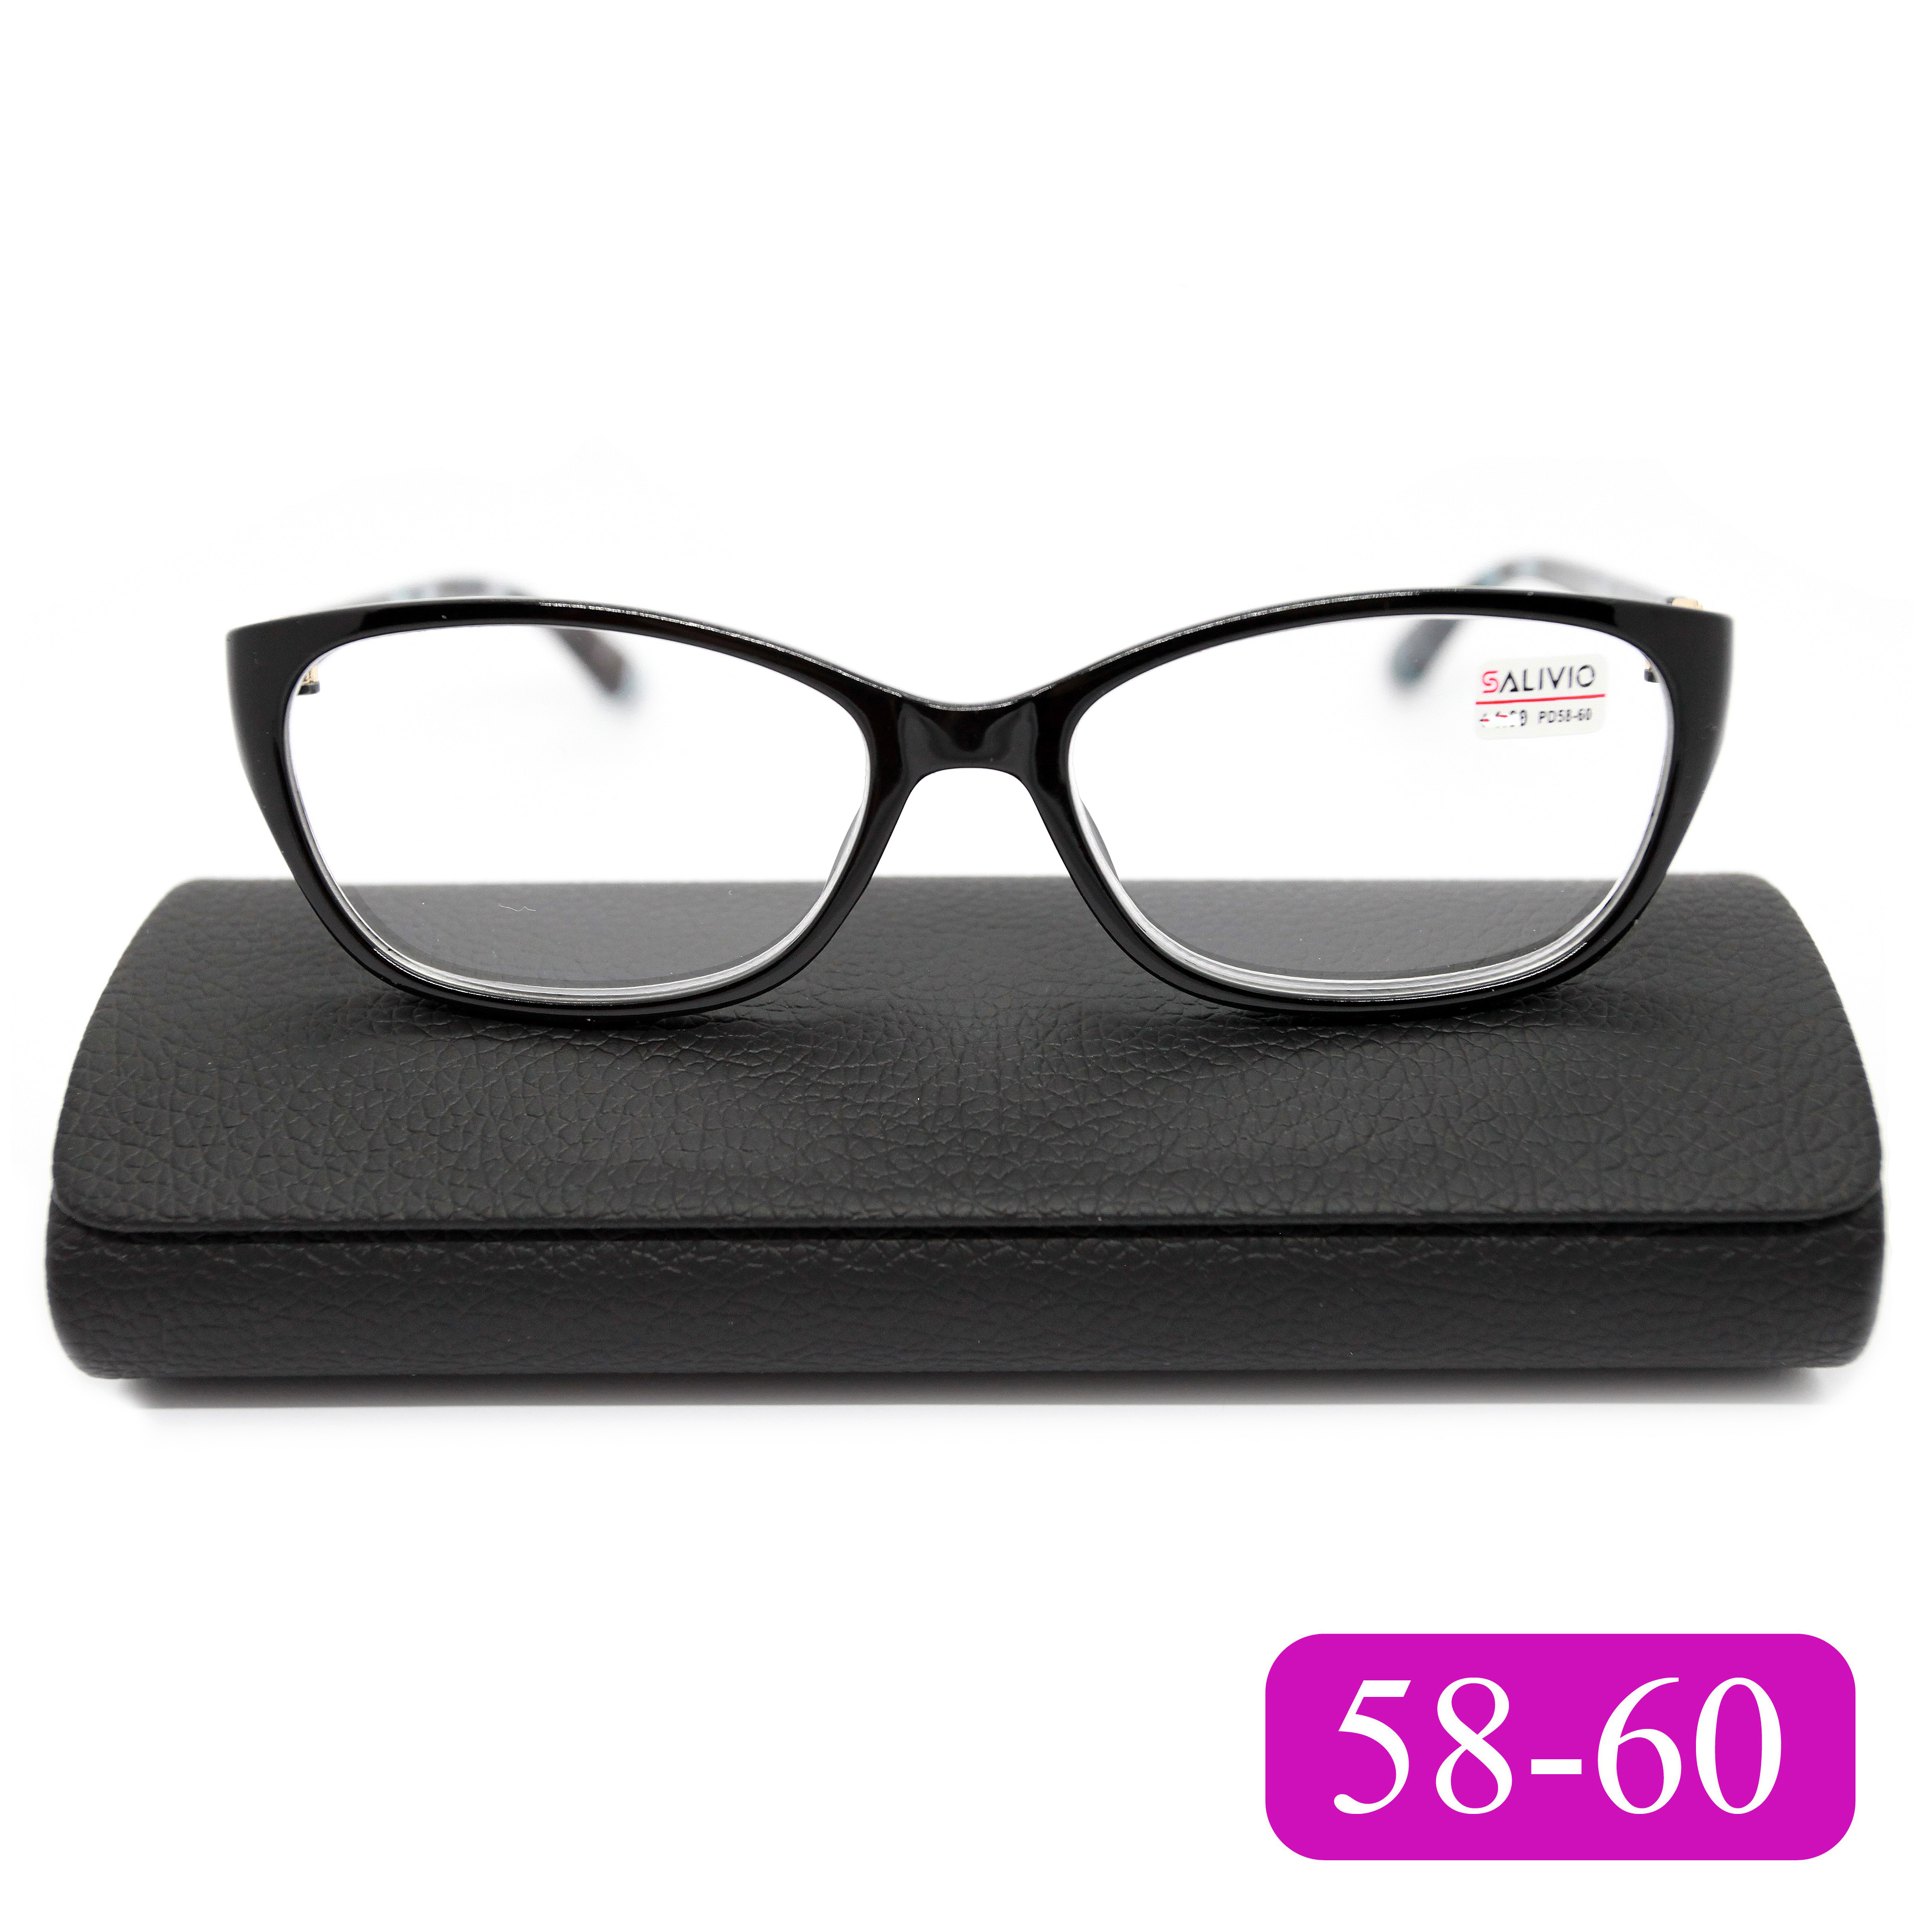 Готовые очки для чтения Salivio 0045 +2,75, c футляром, цвет черный, РЦ 58-60